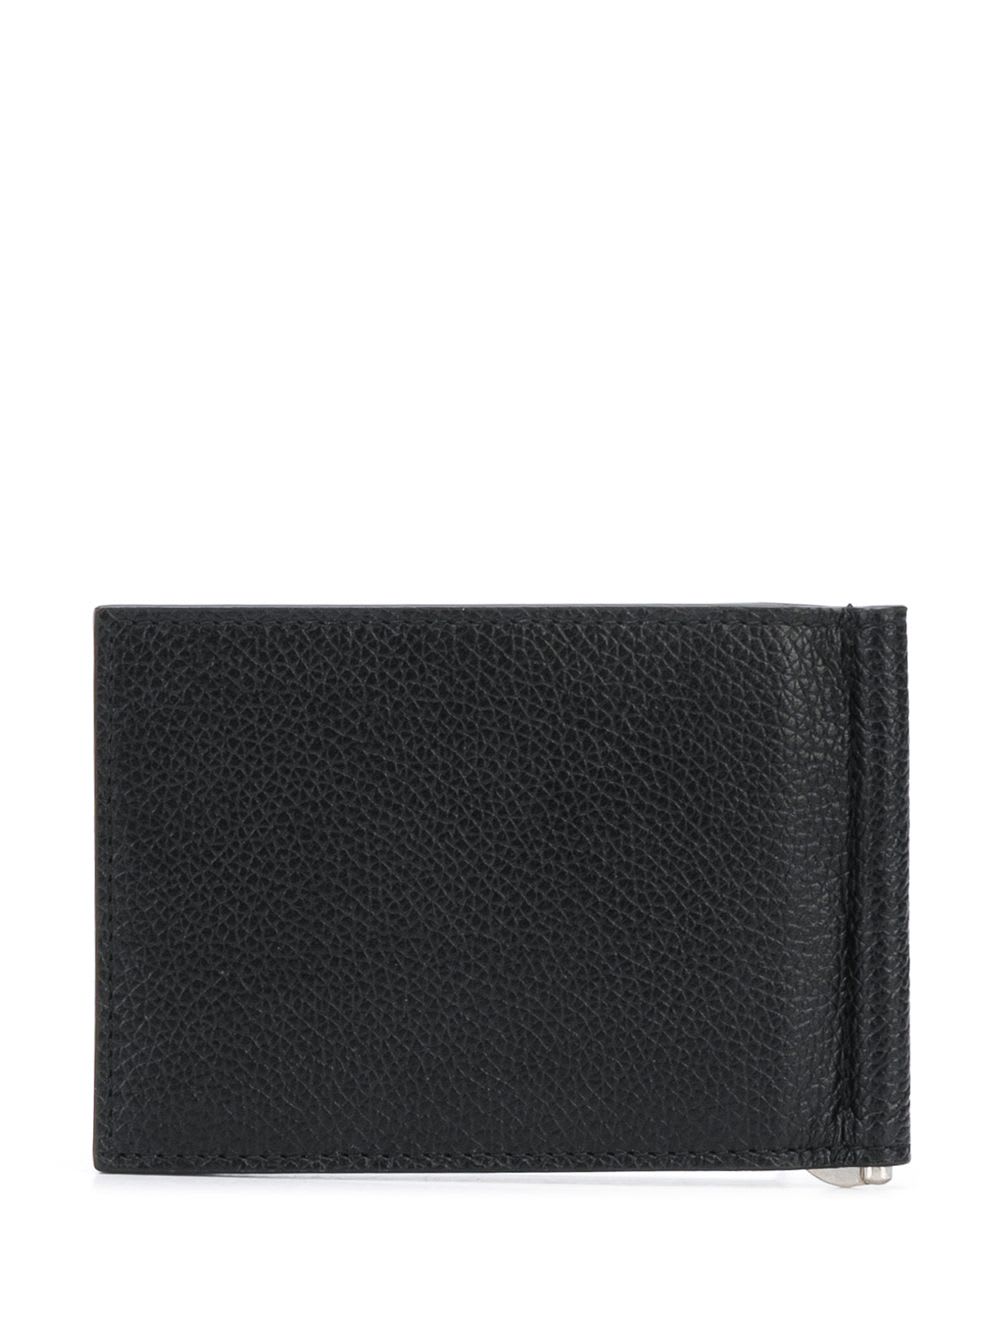 Balenciaga Wallet In Black White